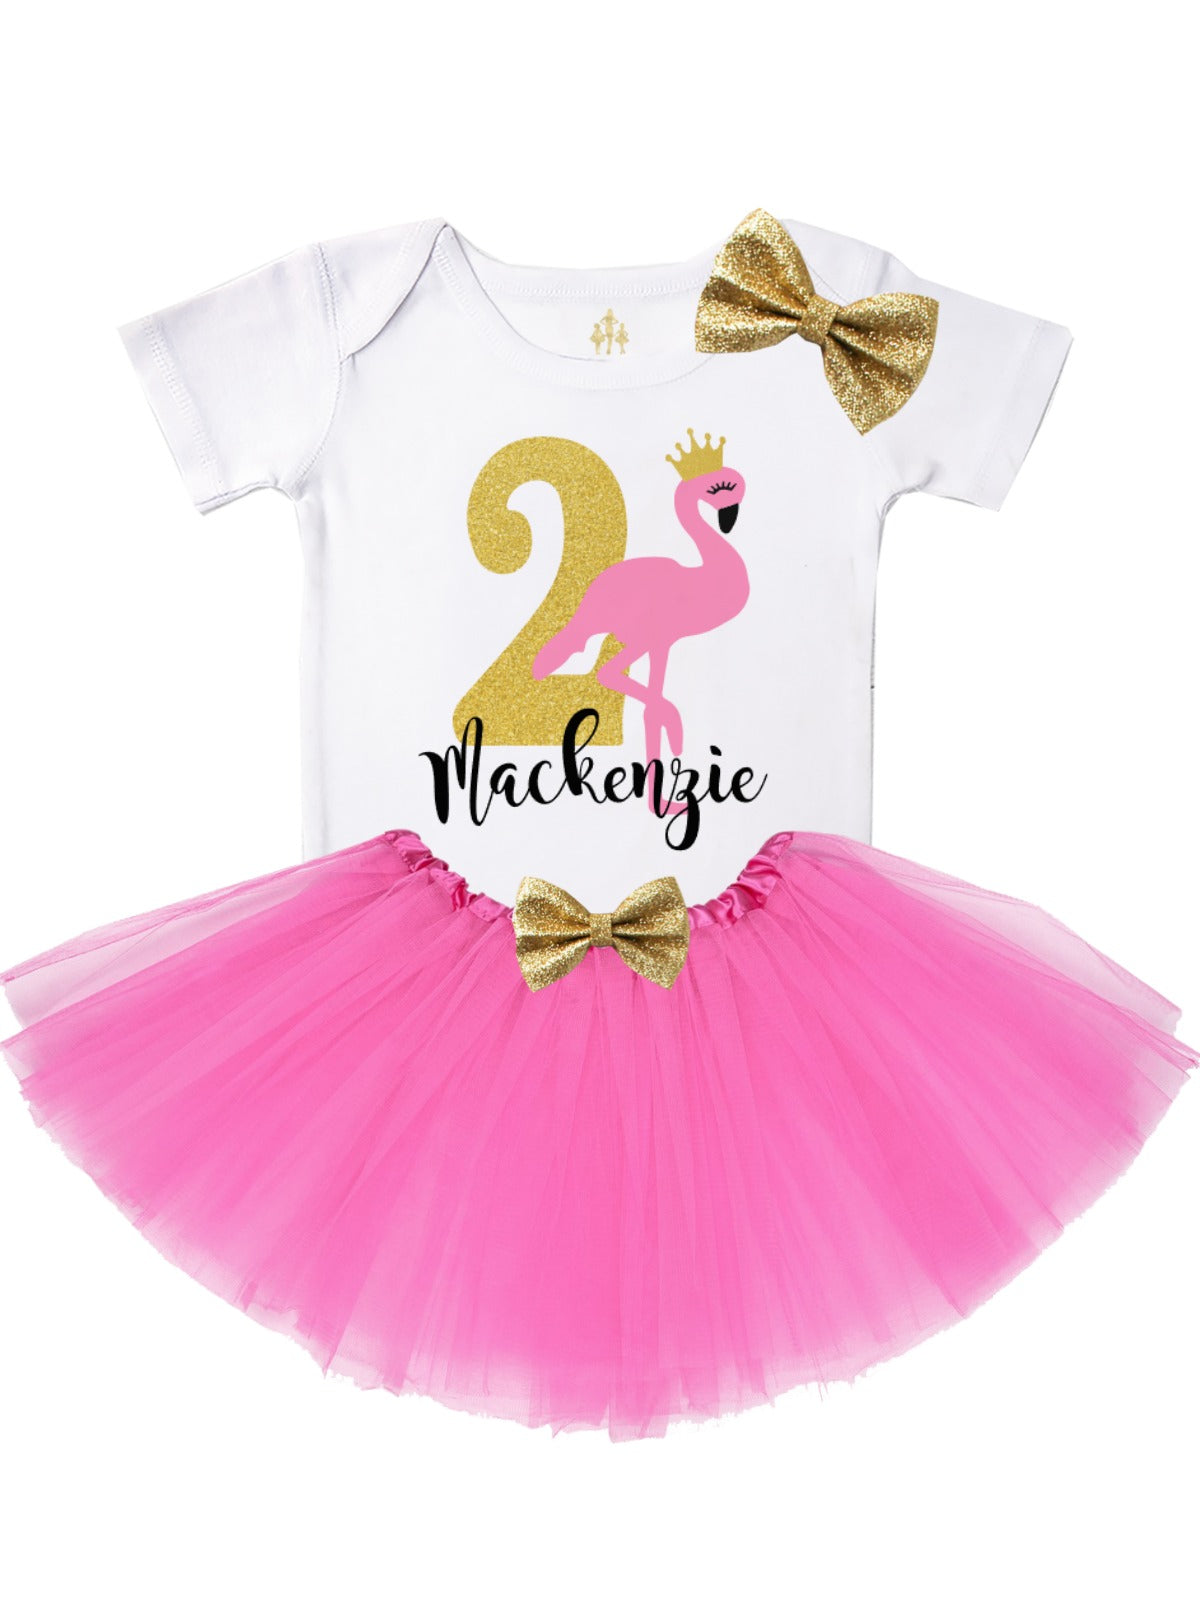 flamingo birthday tutu outfit